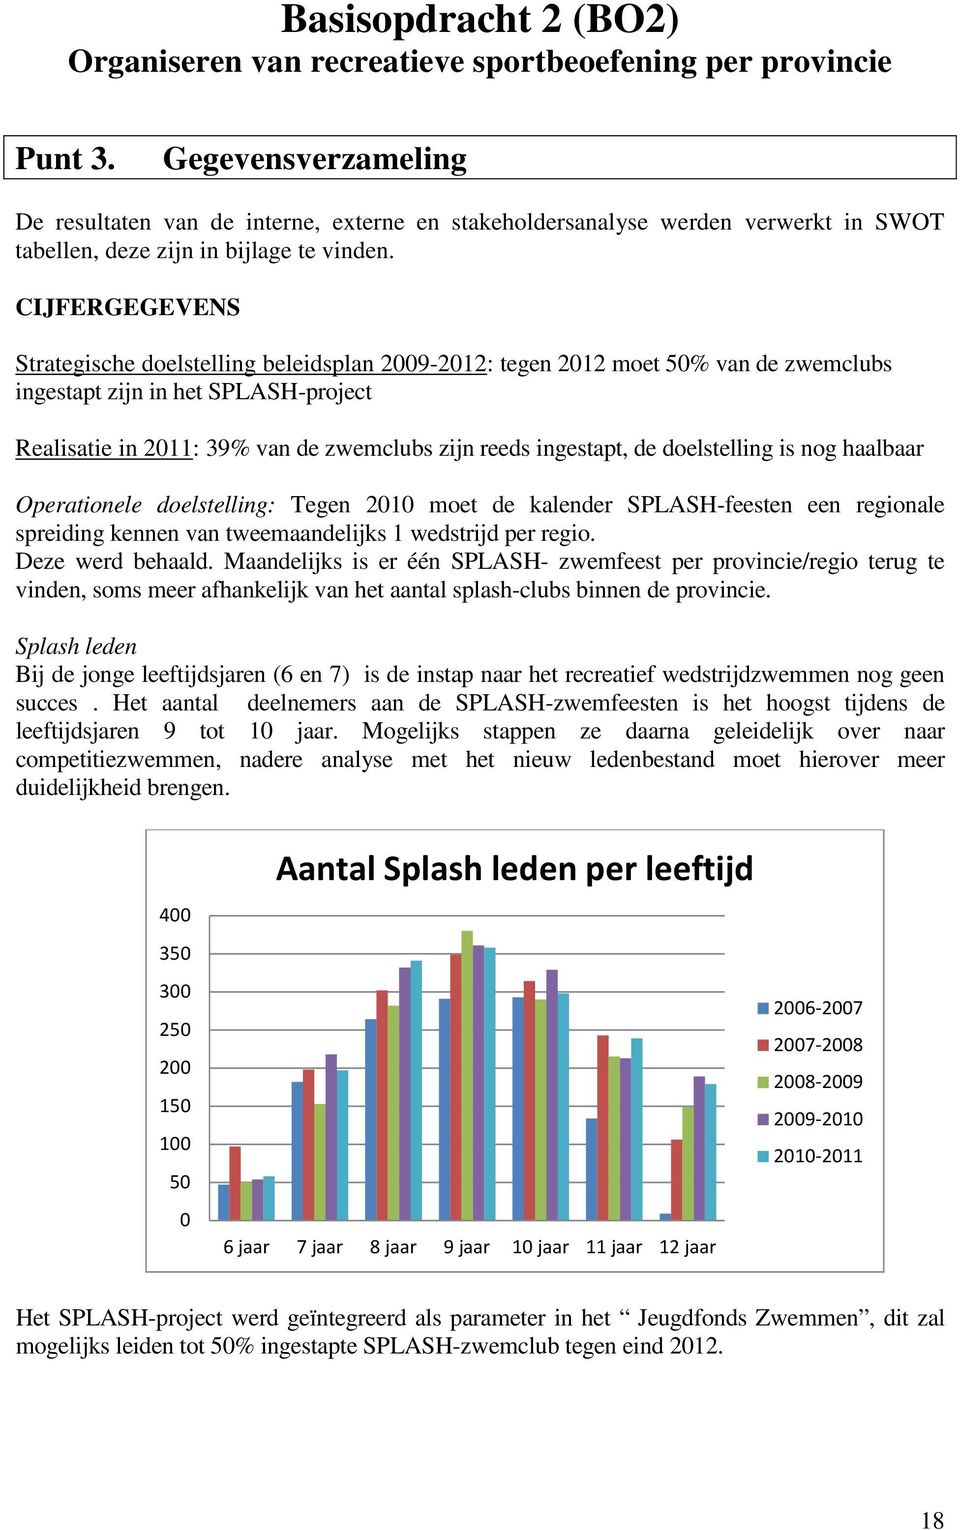 CIJFERGEGEVENS Strategische doelstelling beleidsplan 2009-2012: tegen 2012 moet 50% van de zwemclubs ingestapt zijn in het SPLASH-project Realisatie in 2011: 39% van de zwemclubs zijn reeds